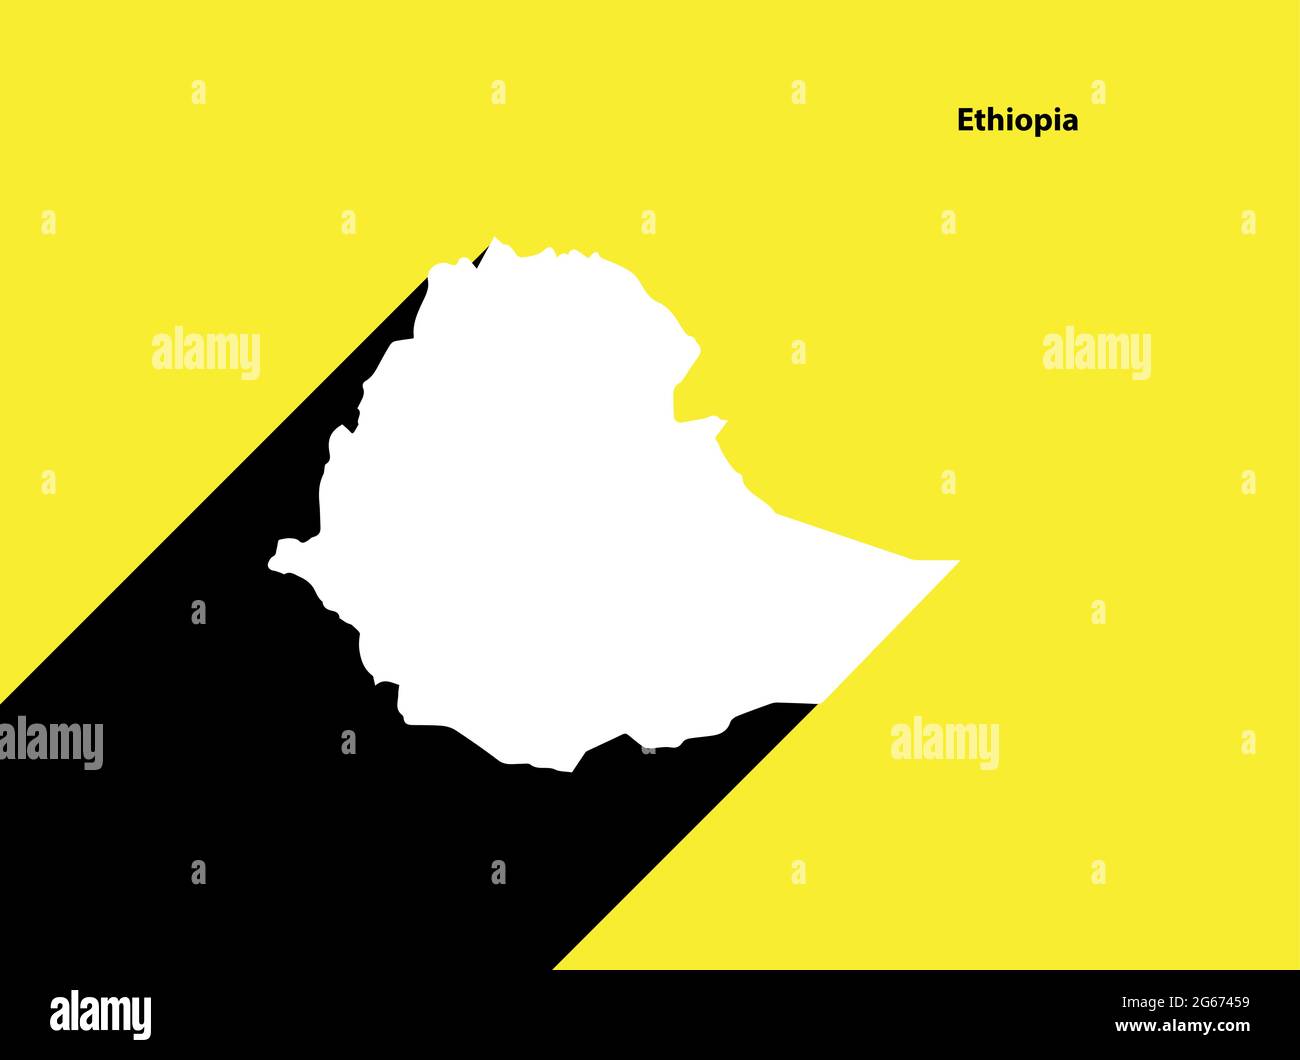 Mappa Etiopia su poster retrò con ombra lunga. Segno vintage facile da modificare, manipolare, ridimensionare o colorare. Illustrazione Vettoriale